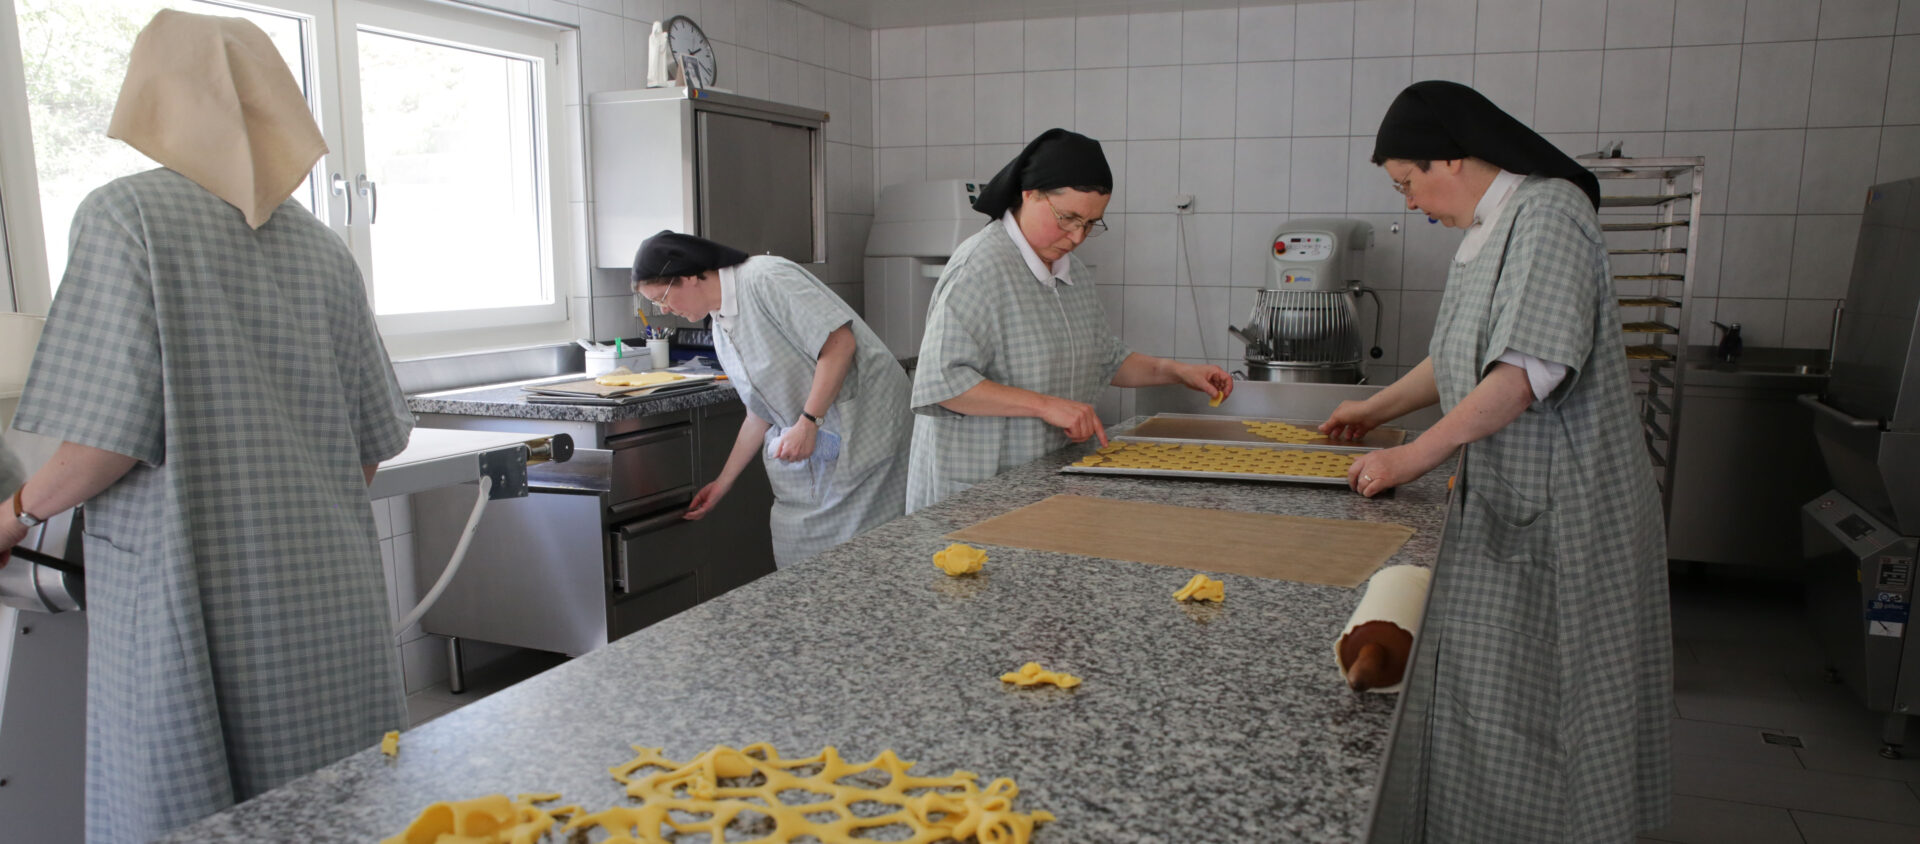 Les carmélites du Pâquier sont notamment actives dans la fabrication de biscuits | © Bernard Hallet